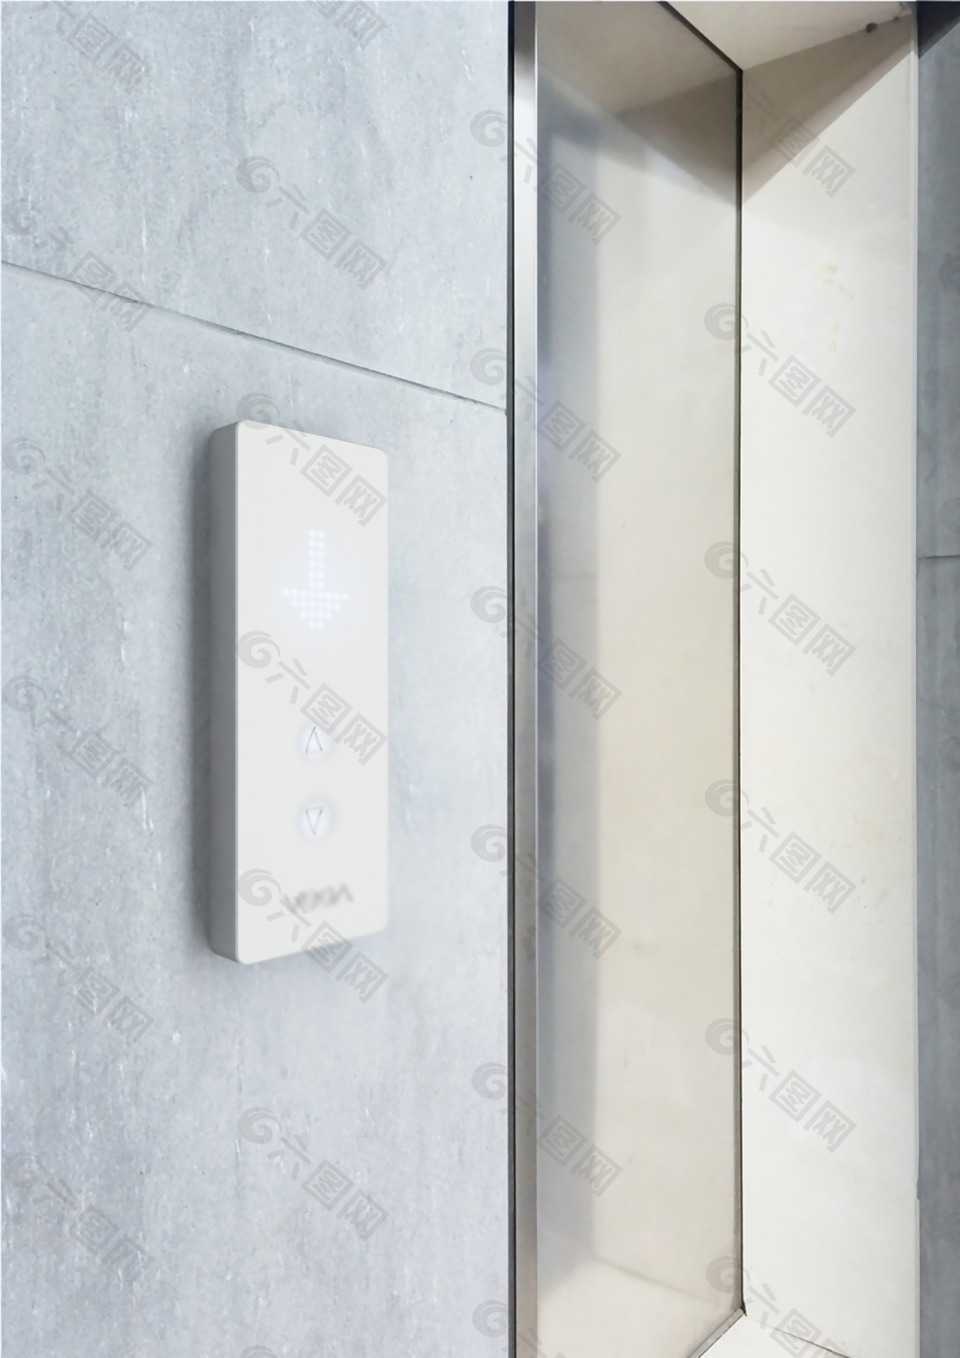 个性创意的白色电梯操作面板jpg素材